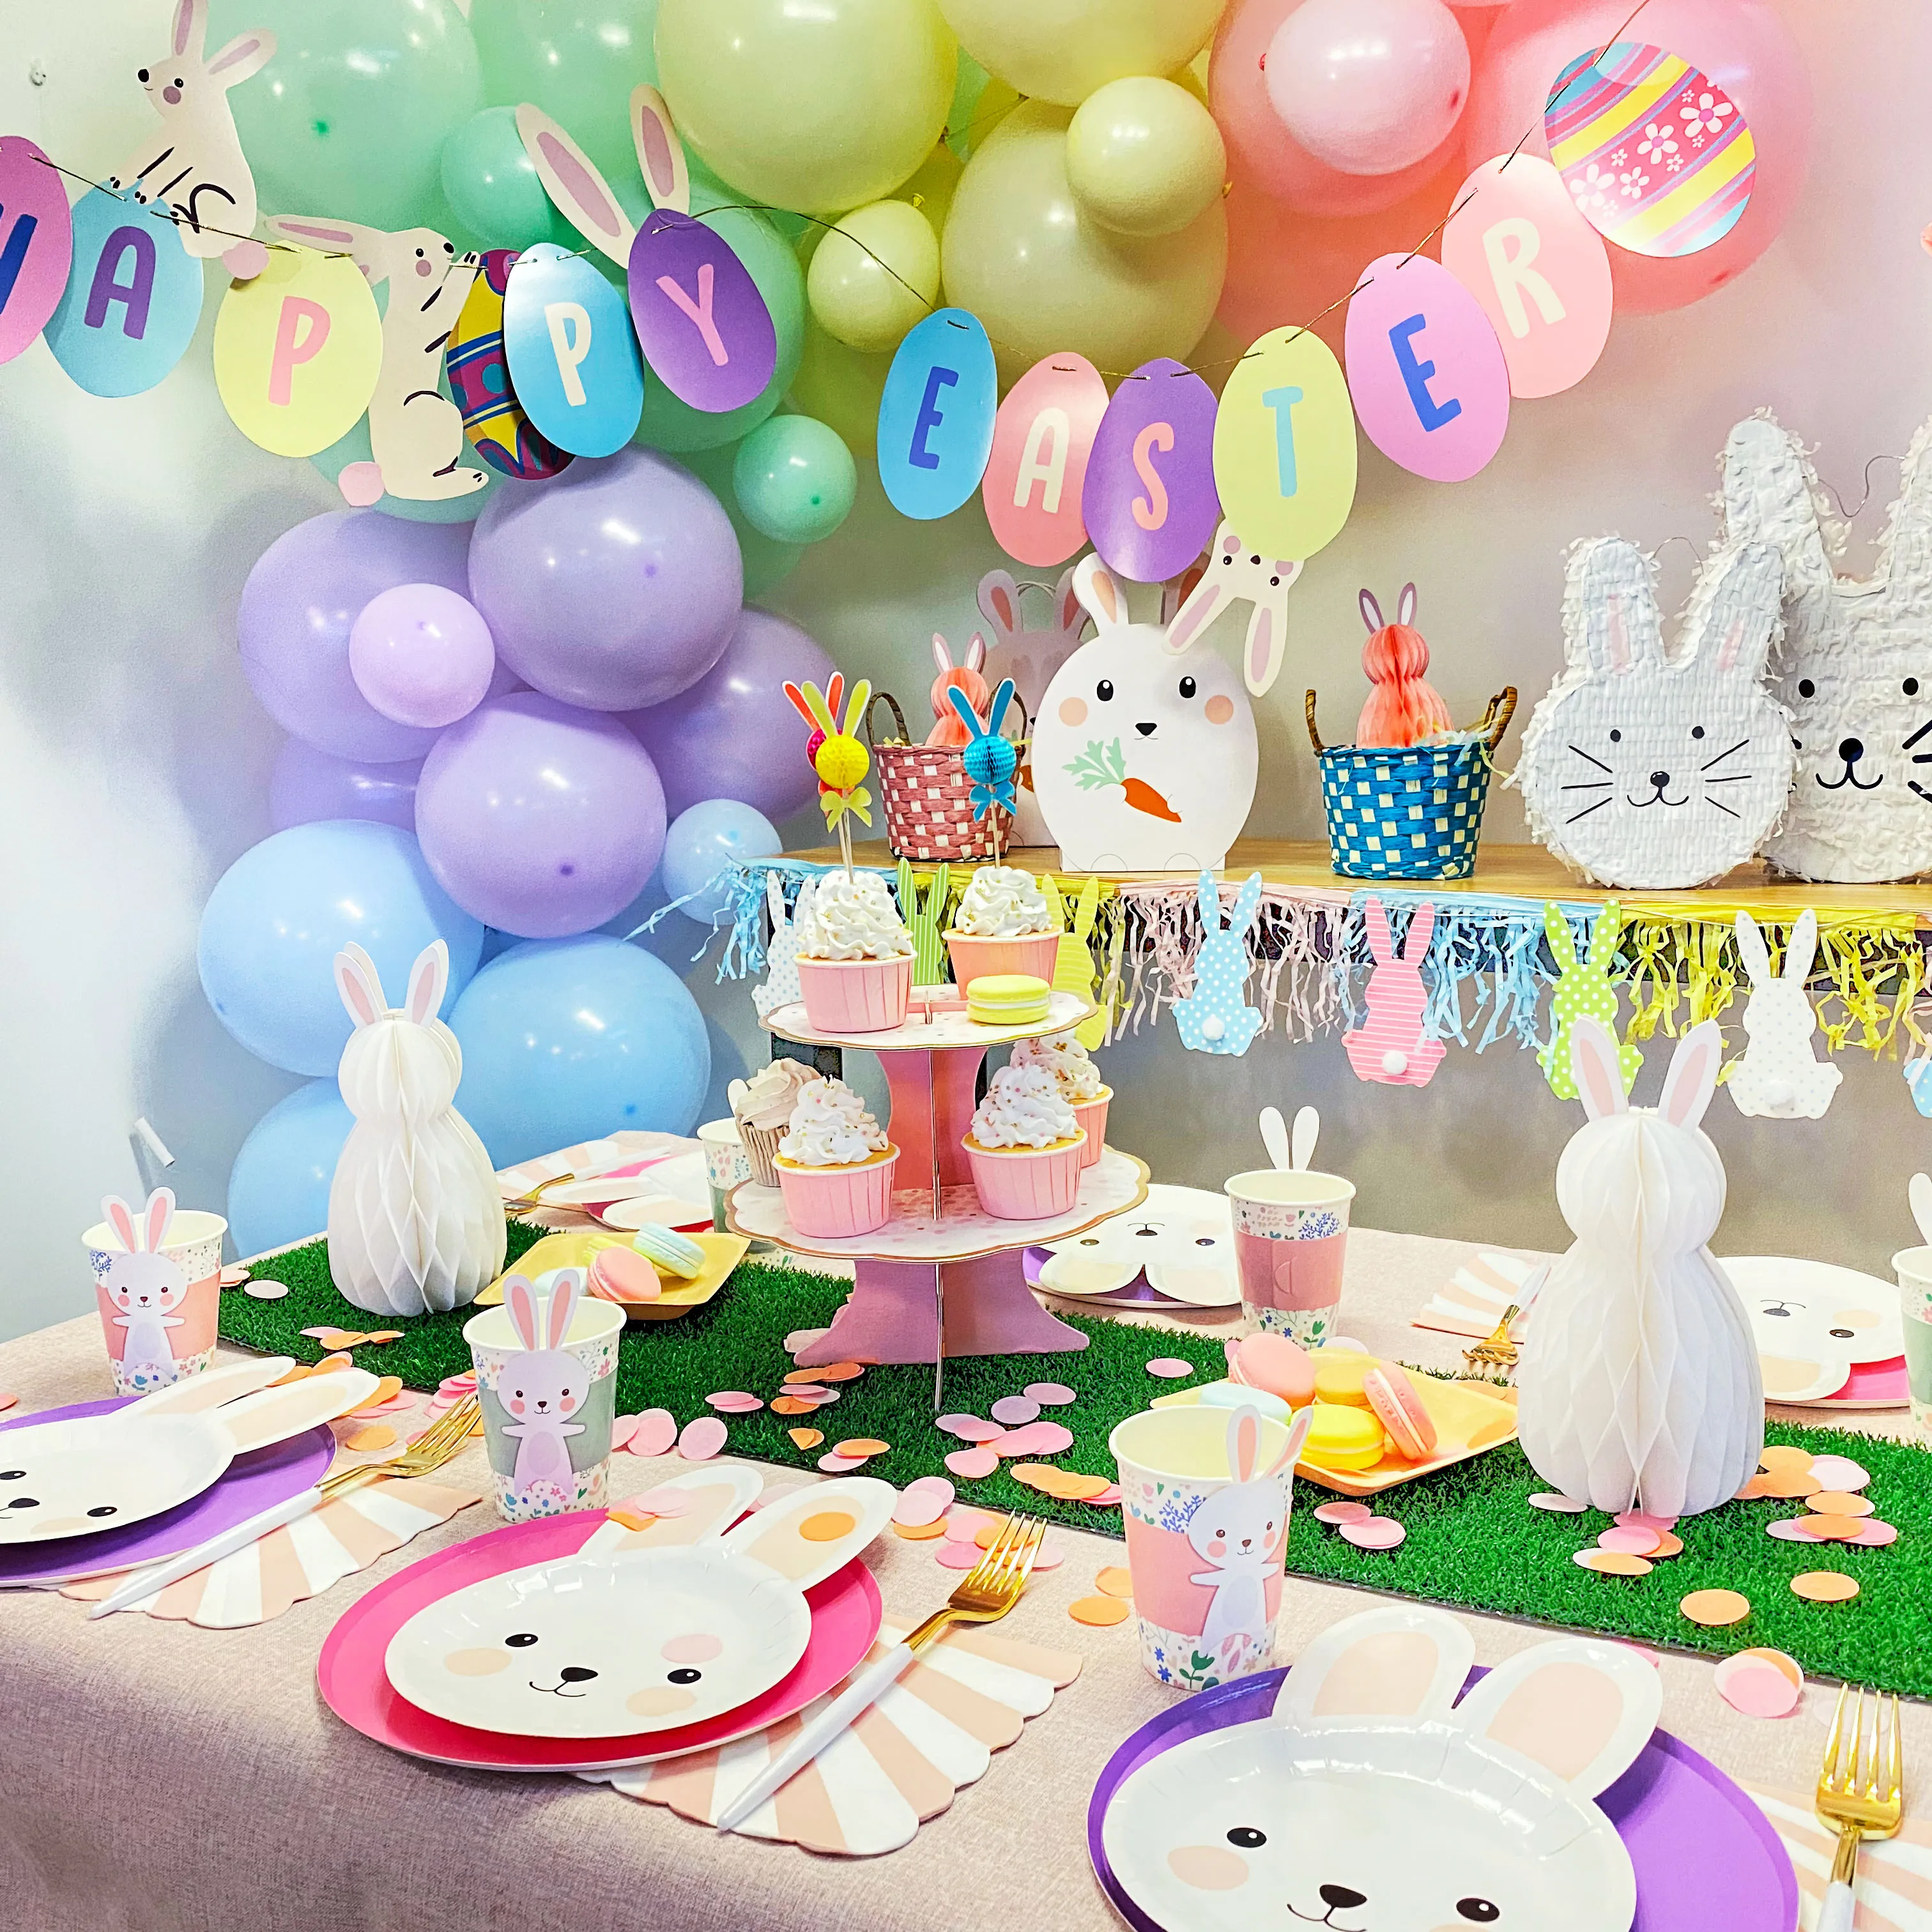 Ostern Bunny Kaninchen Mädchen Geburtstag Ei jagd spiel tasche Kinder Party Einweg Geschirr set serviette tasse tissue